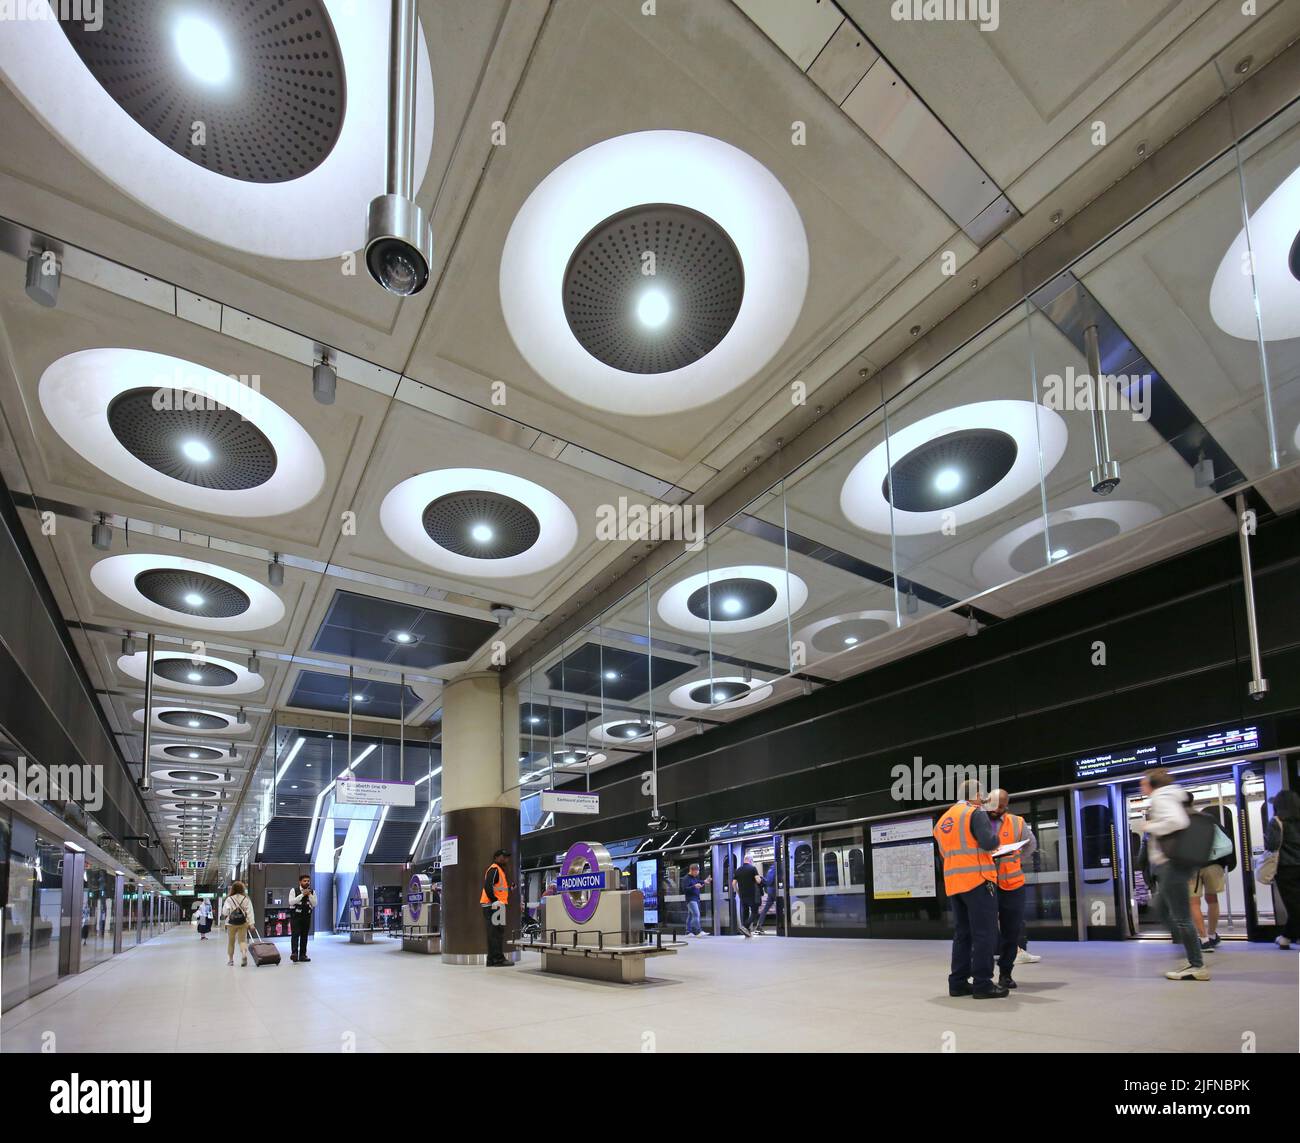 Londres, Reino Unido. Paddington Station en la recién inaugurada red de metro Elizabeth Line (Crossrail). Nivel de plataforma, muestra trenes y escaleras mecánicas. Foto de stock